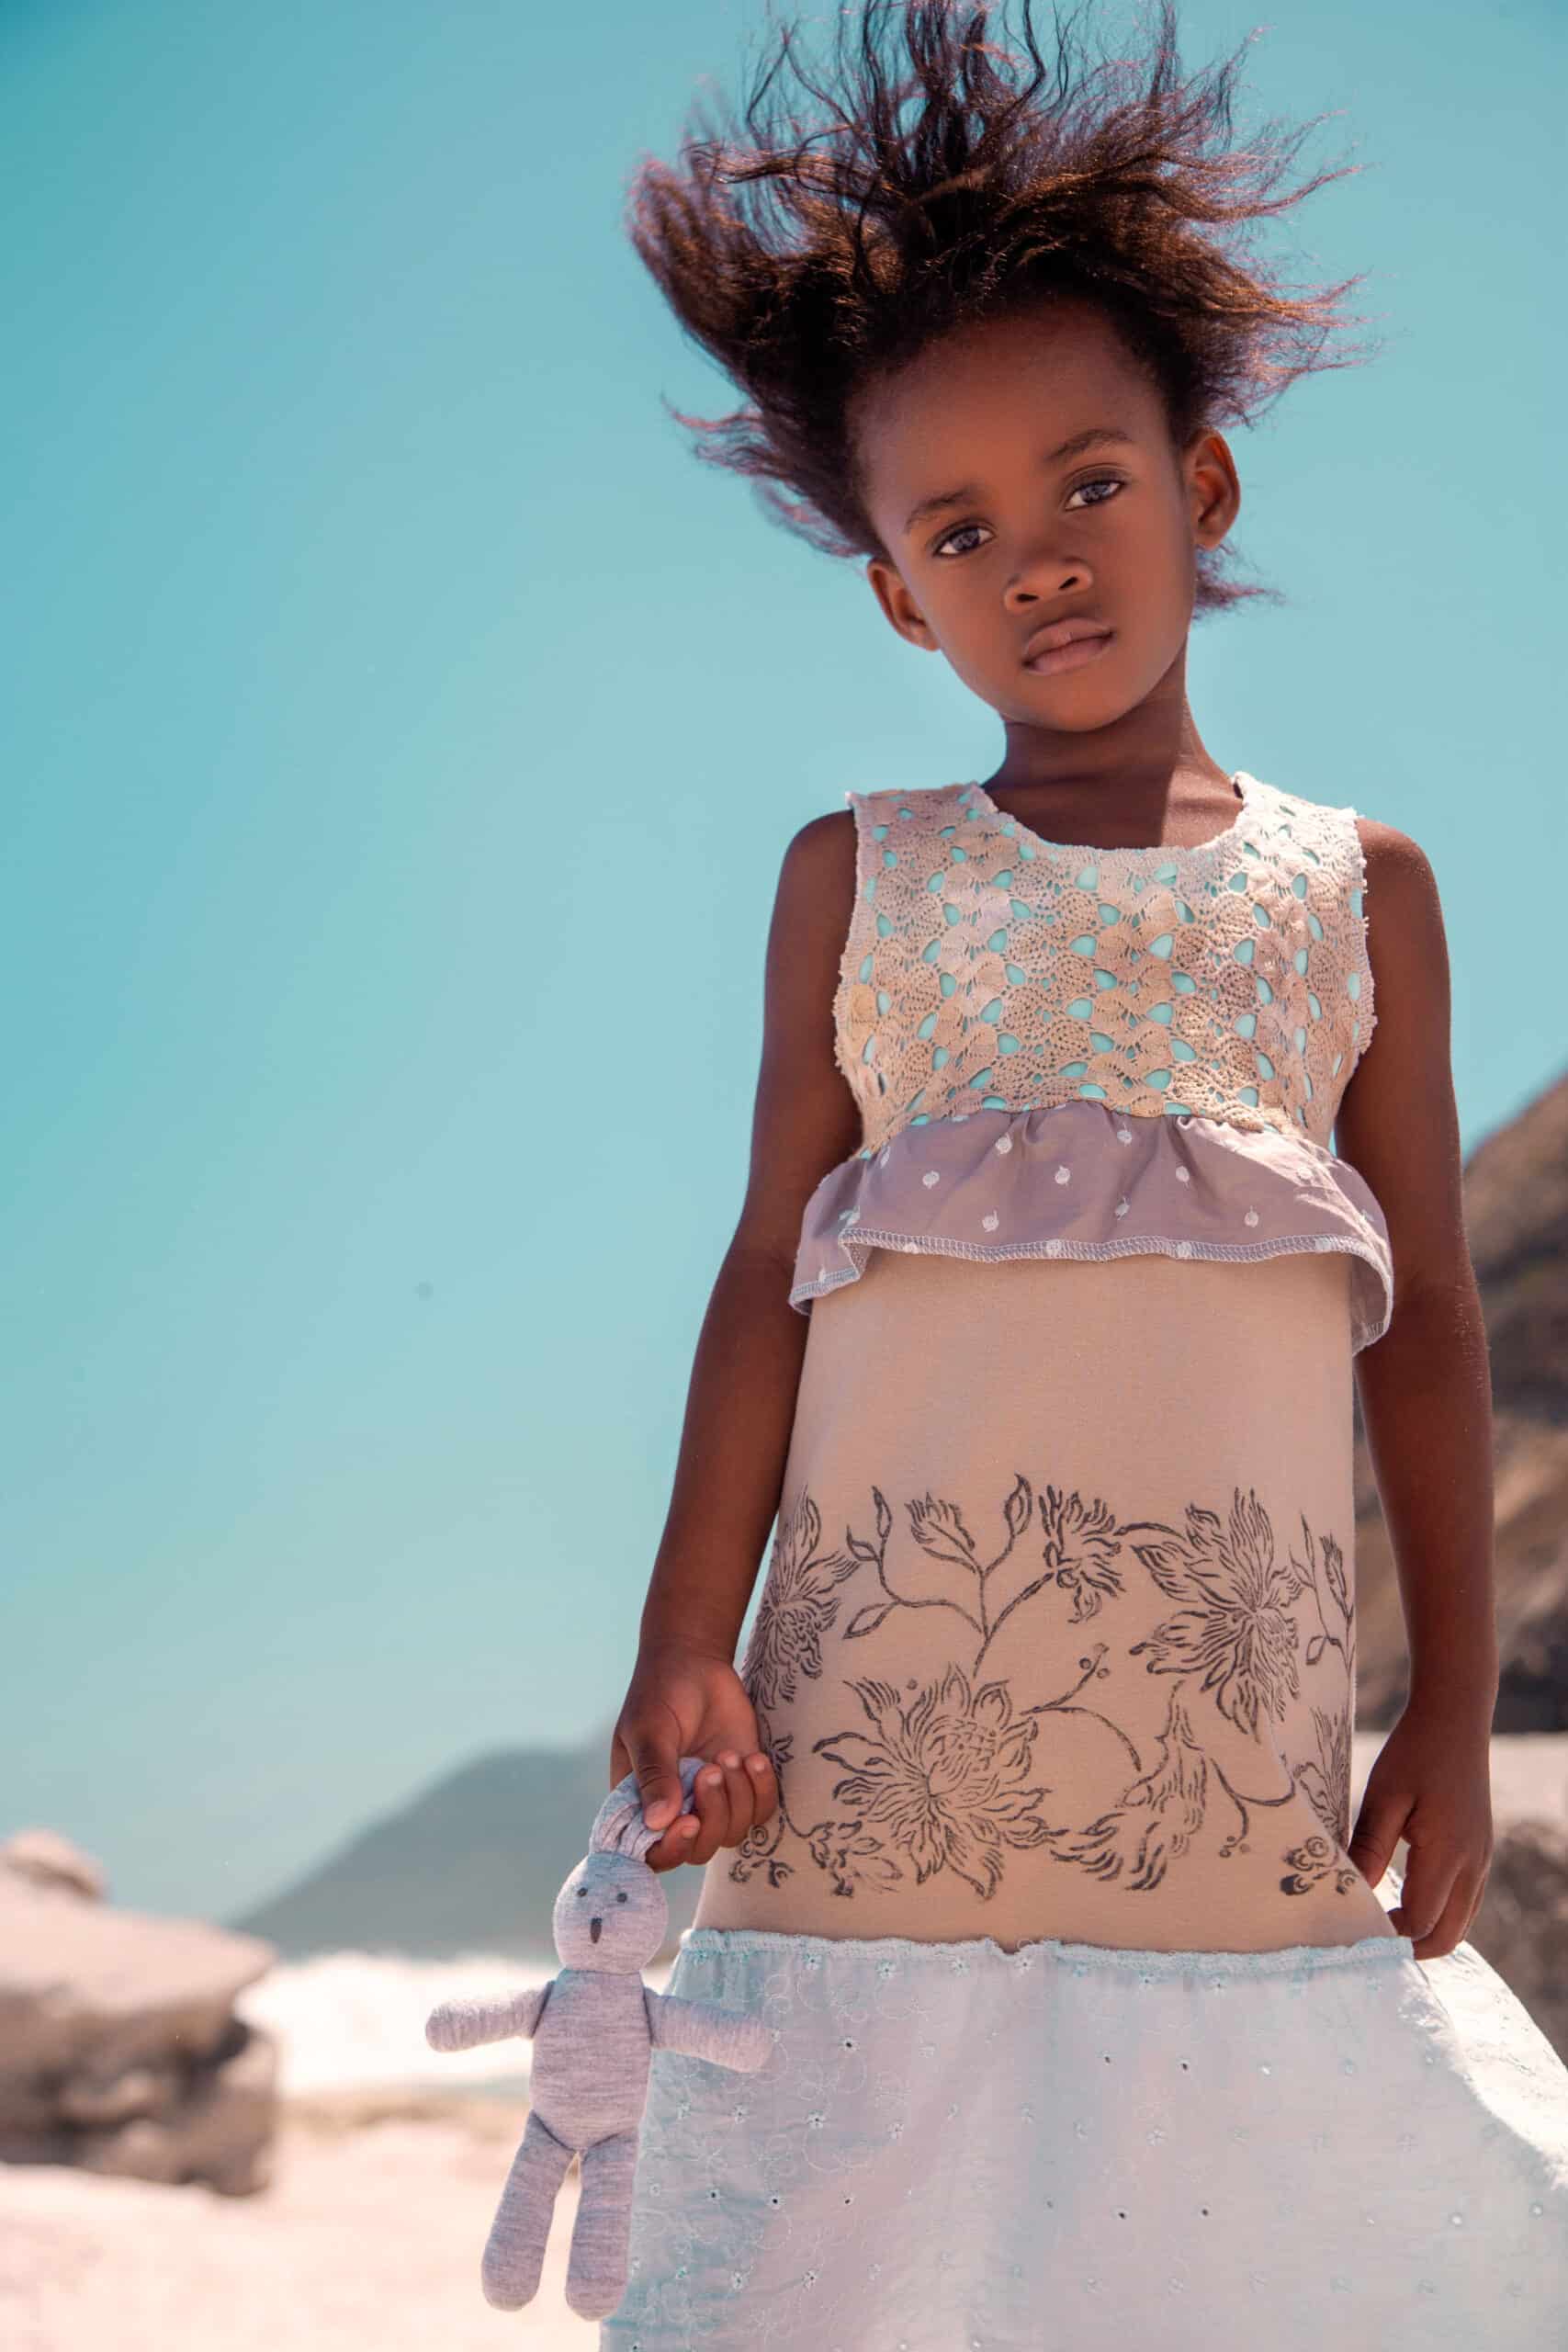 Ein junges Mädchen steht mit einem Spielzeug in der Hand an einem Strand, wobei ihr Haar vom Wind nach oben geweht wird. Sie trägt ein detailreiches, elegantes Kleid mit Blumenmuster vor dem Hintergrund eines blauen Himmels und einer felsigen Landschaft. © Fotografie Tomas Rodriguez